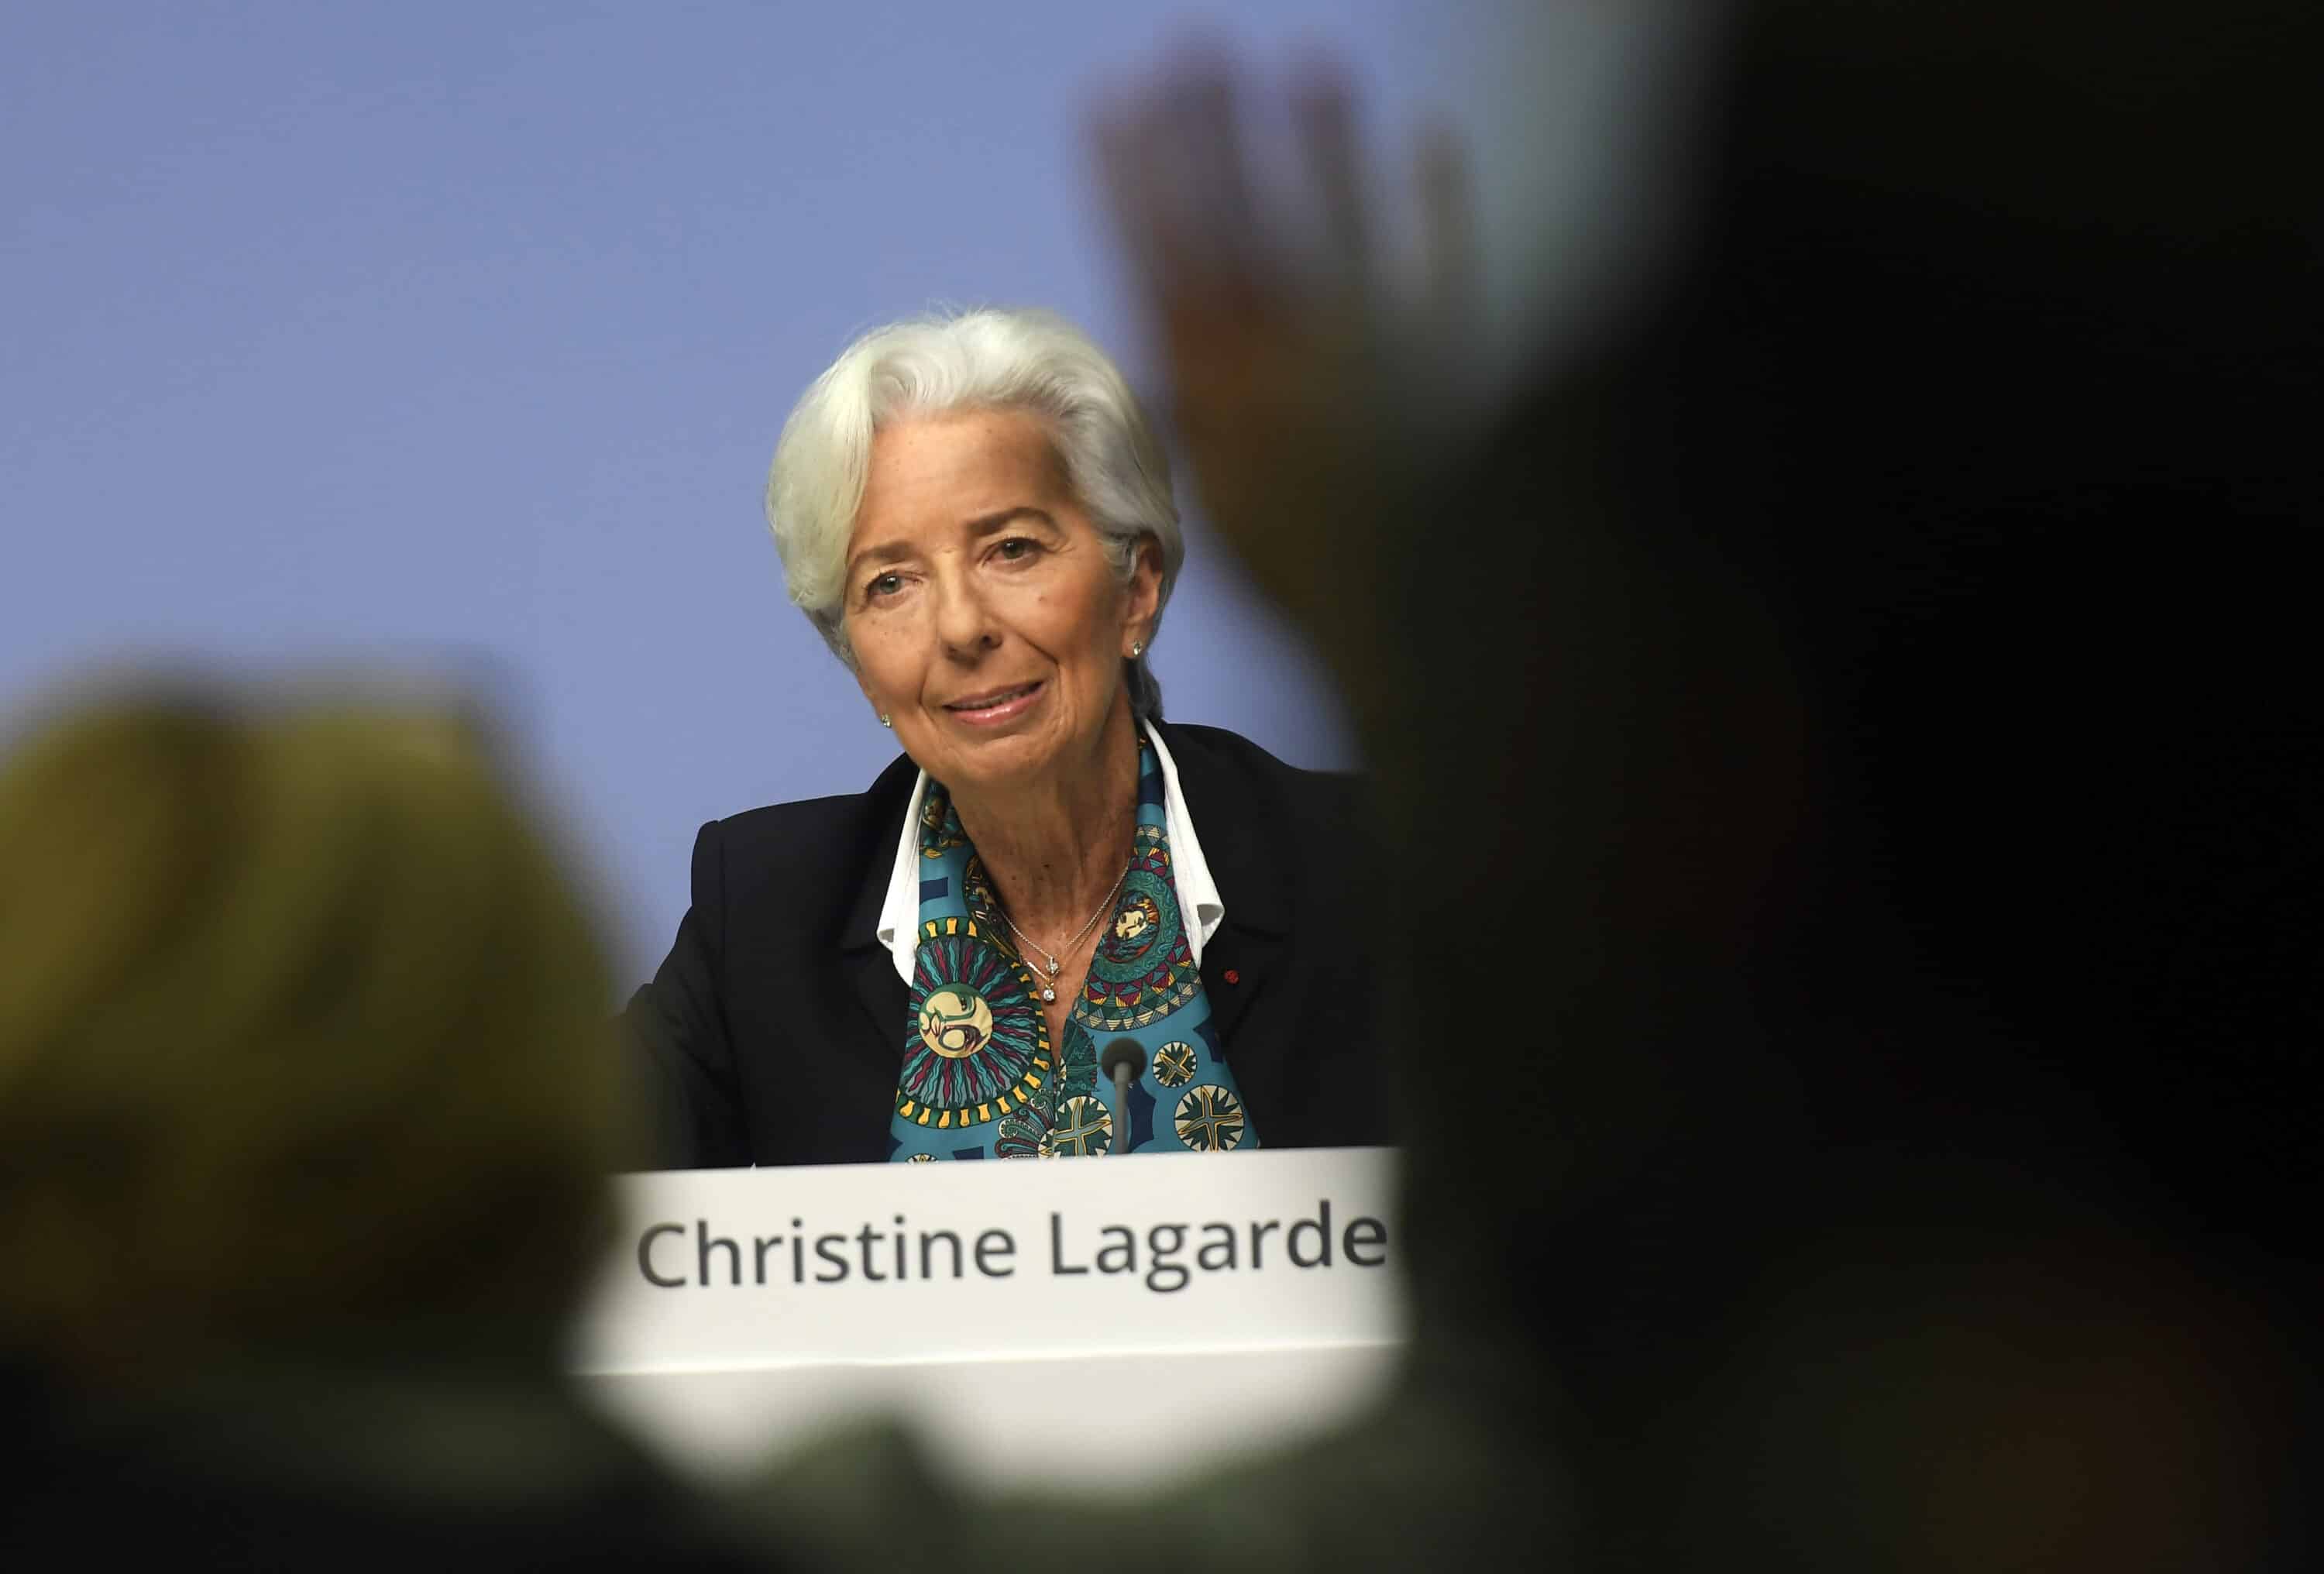 “Ci saranno sempre più aumenti shock dei prezzi”: Lagarde lancia l’allarme